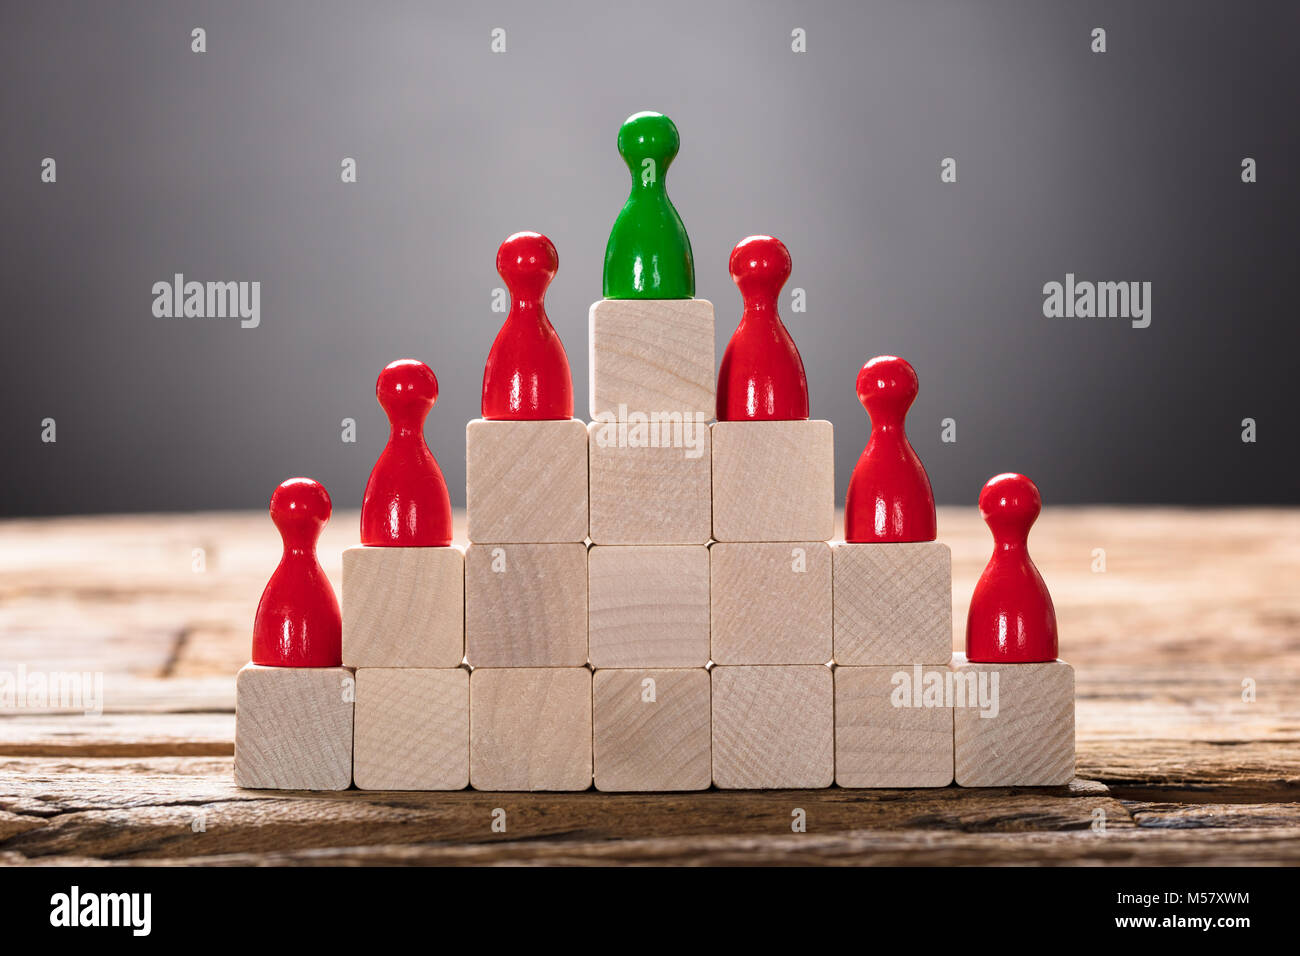 Libre de vert et pion rouge figurines disposées sur des blocs en bois Banque D'Images